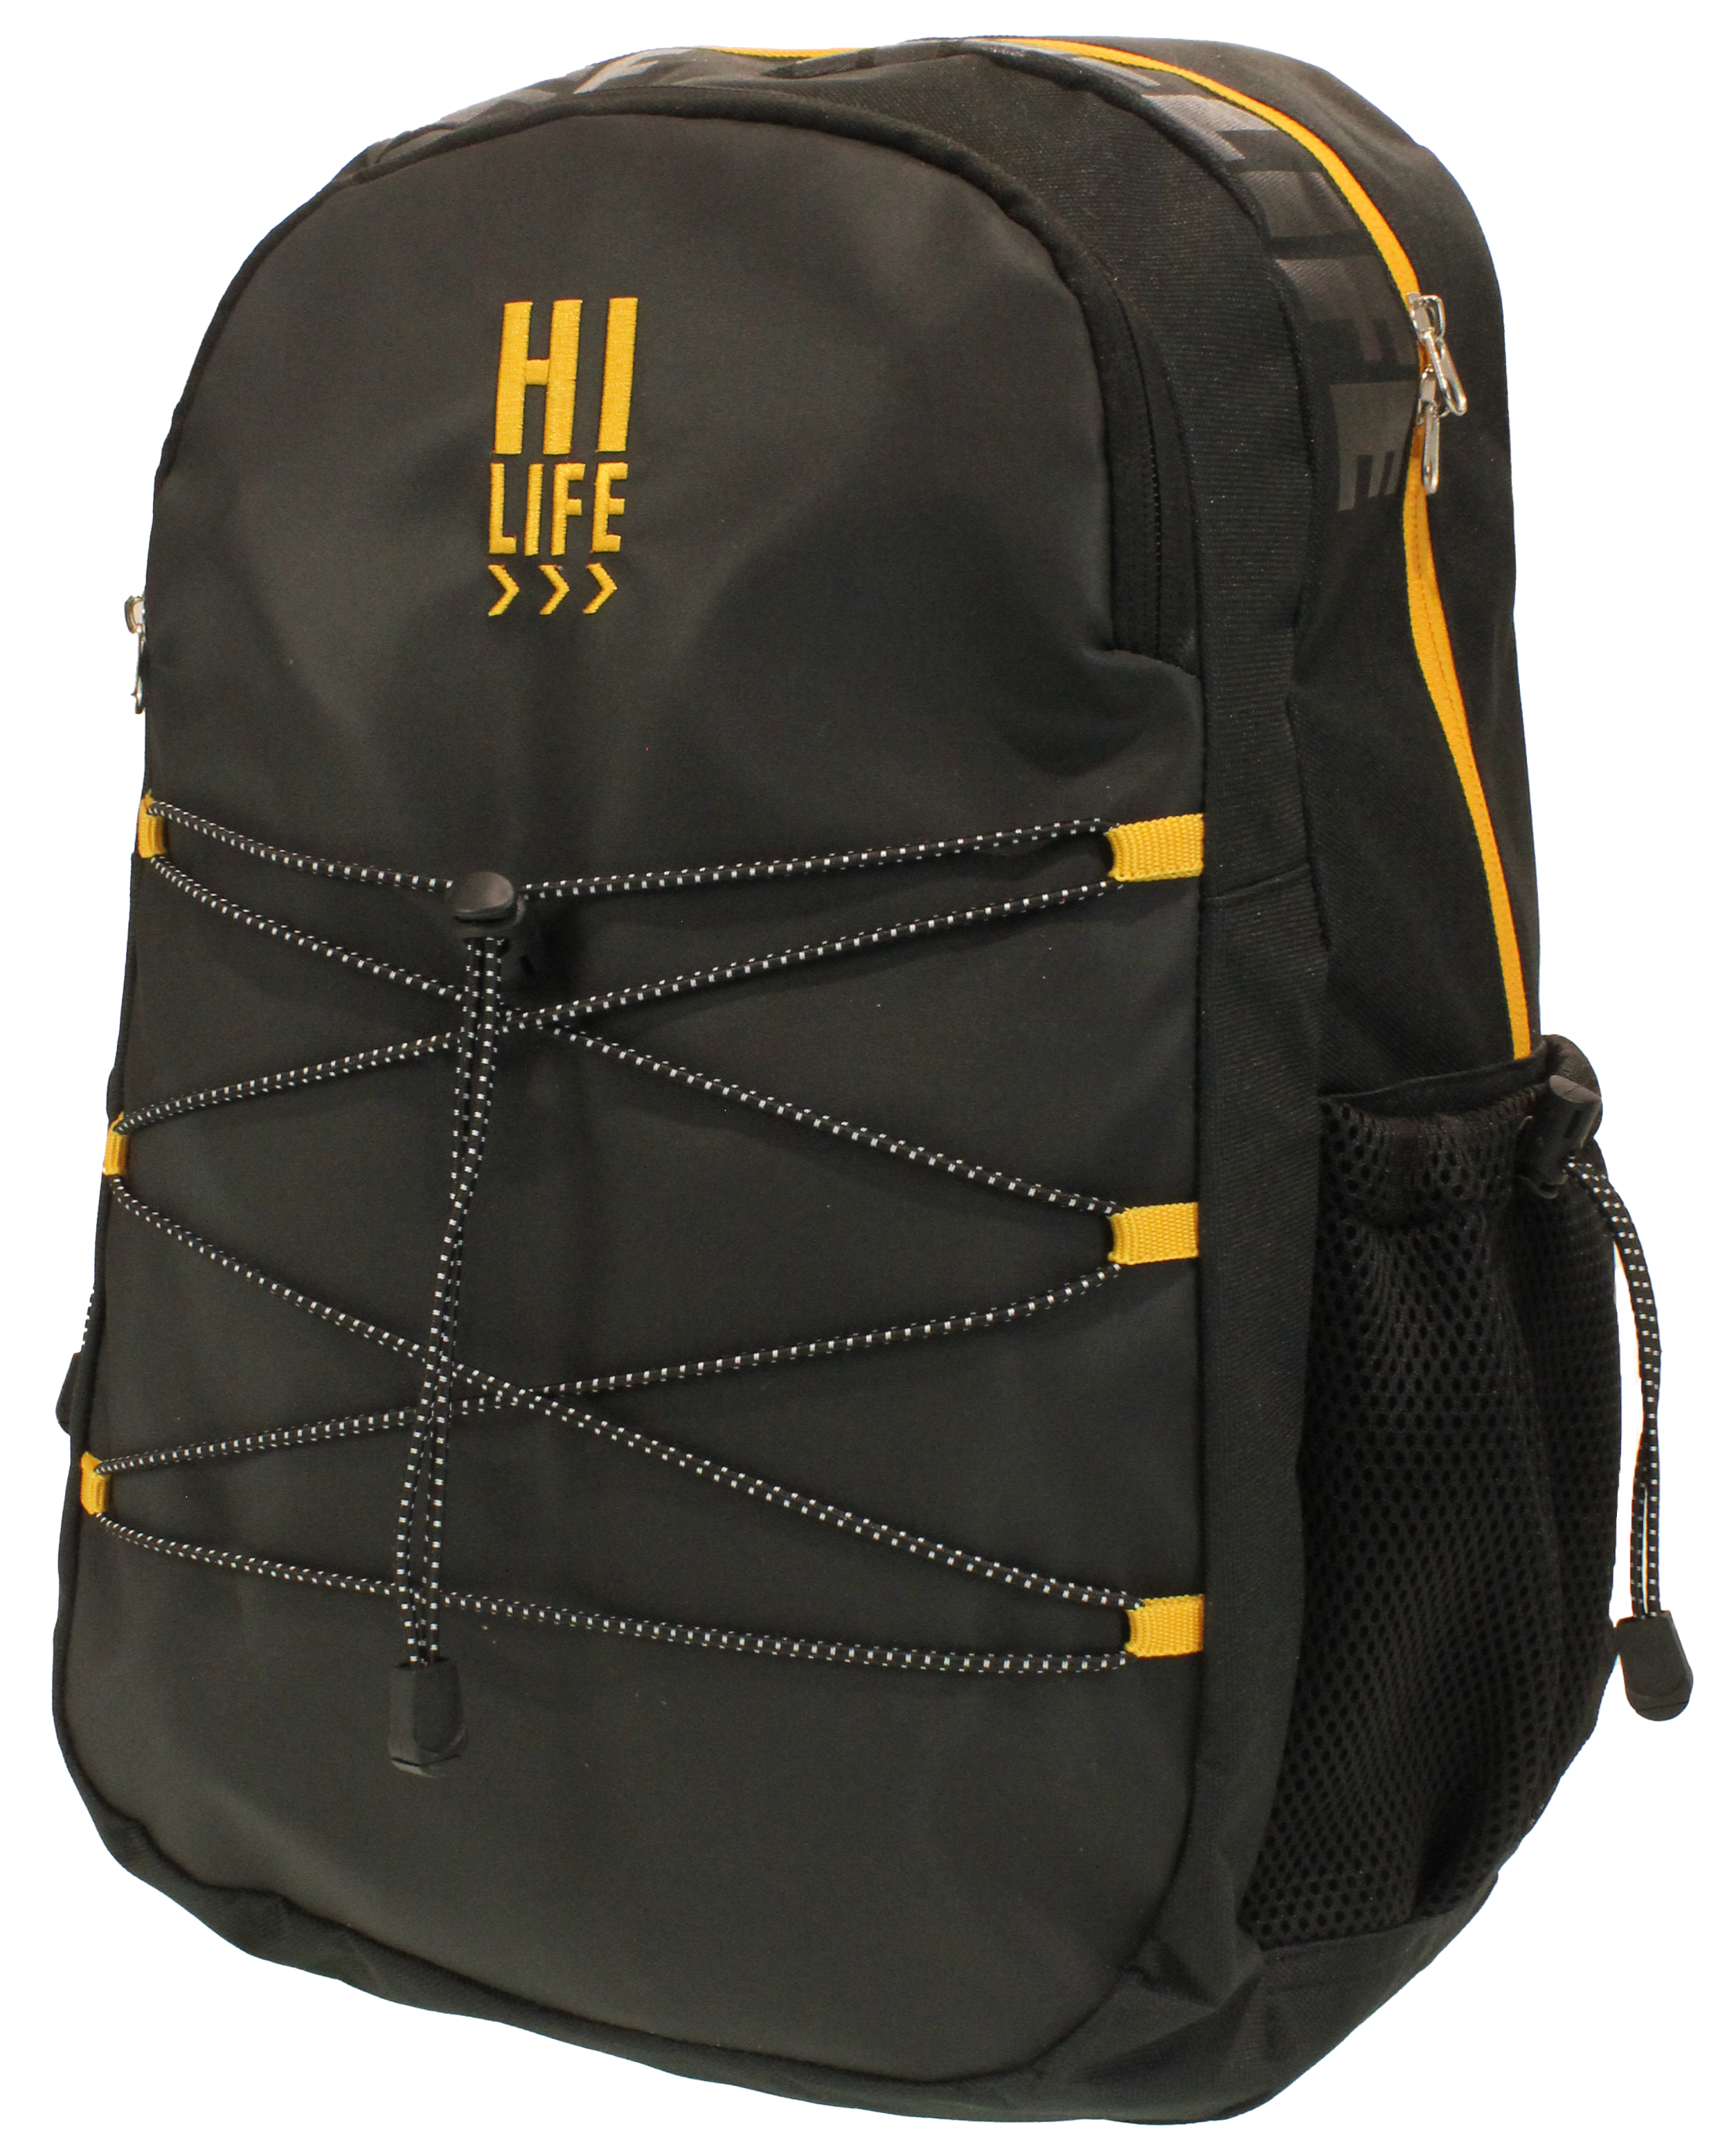 Hi-Life Student Backpack Black/Gold